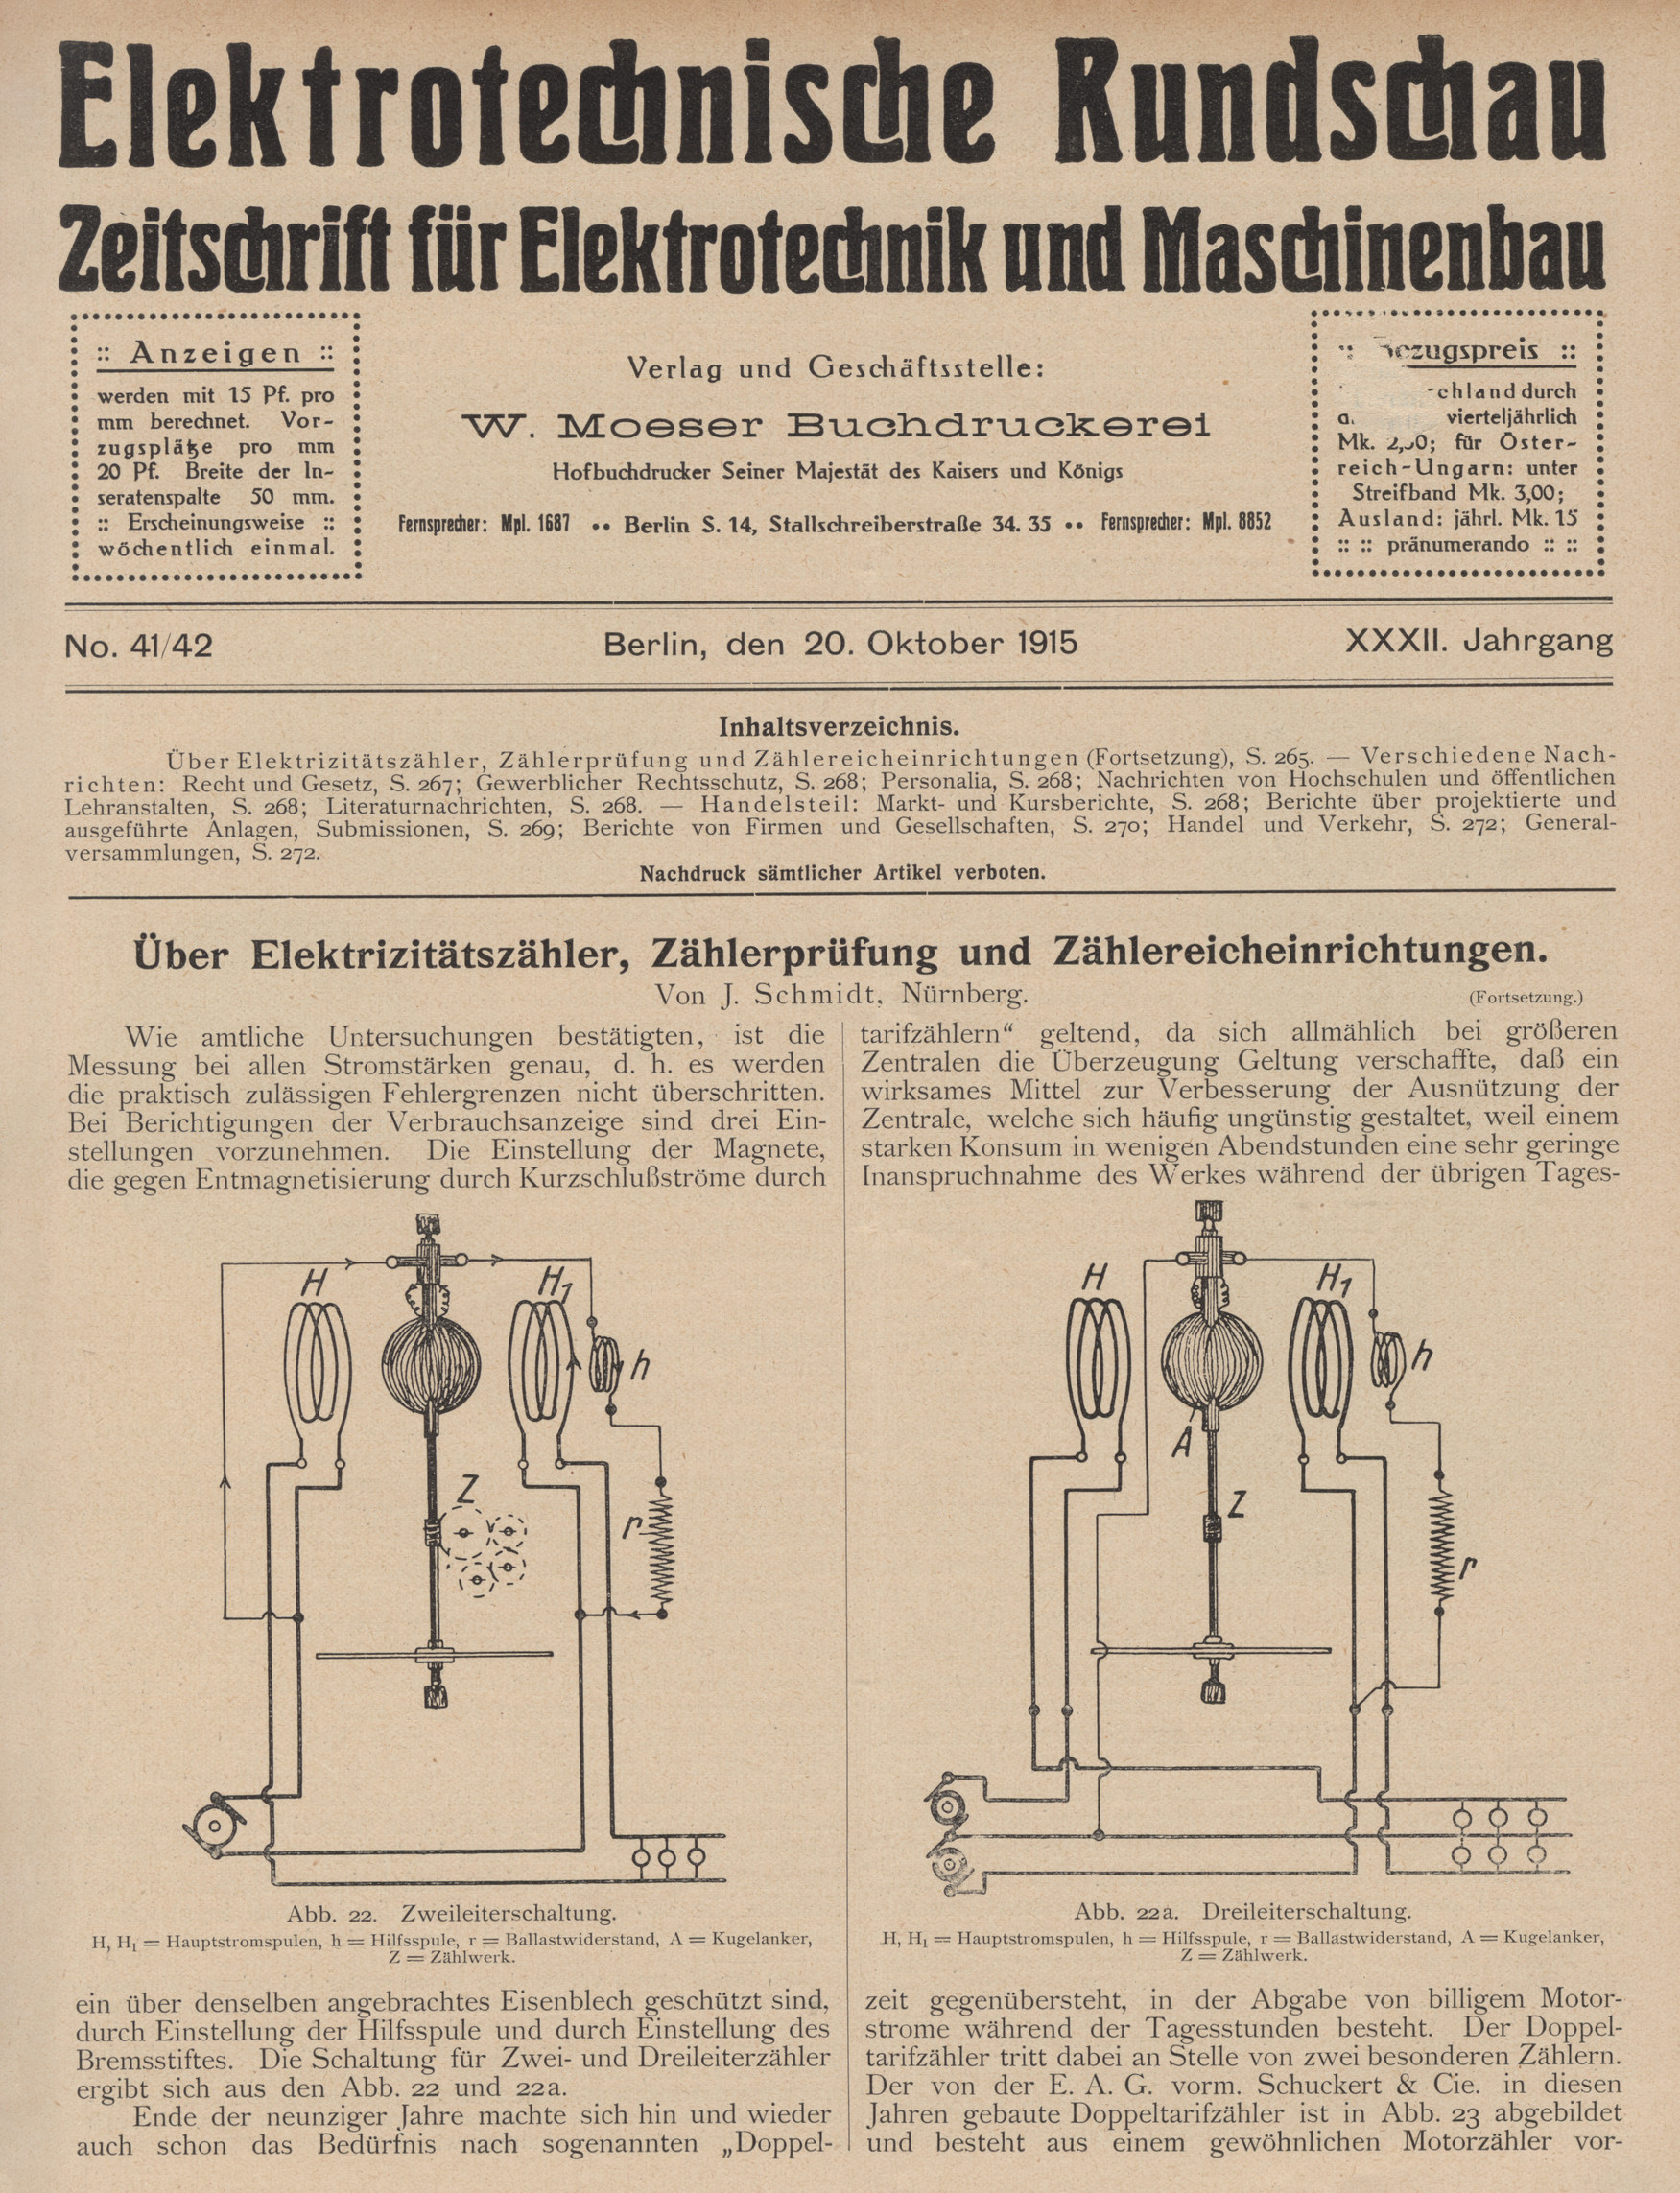 Elektrotechnische Rundschau : Zeitschrift für Elektrotechnik und Maschinenbau + Polytechnische Rundschau, No. 41/42, XXXII. Jahrgang